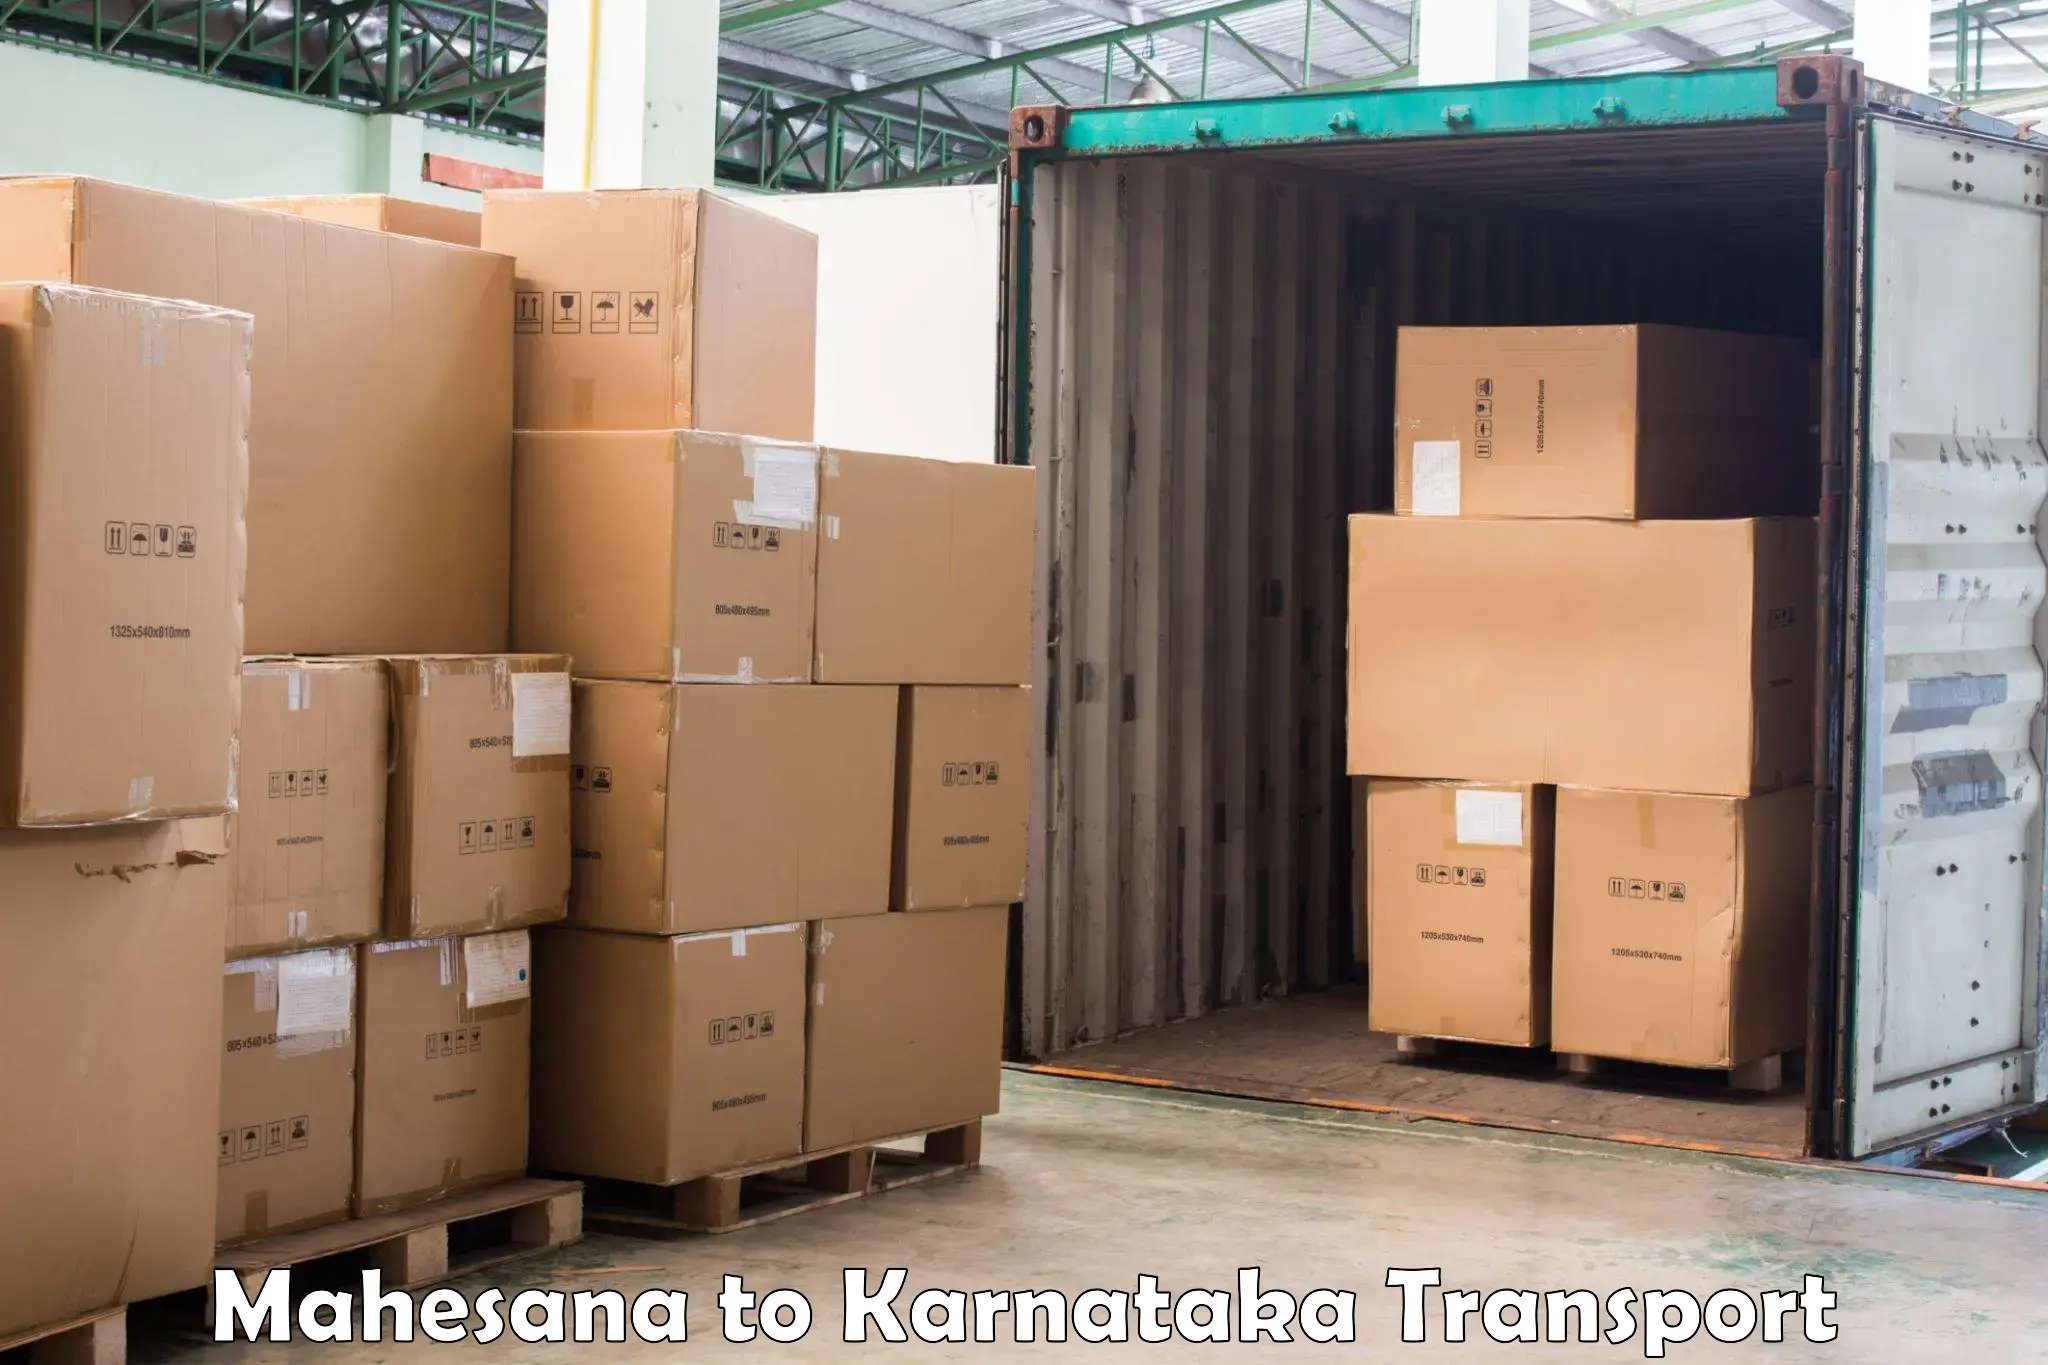 International cargo transportation services Mahesana to Mysore